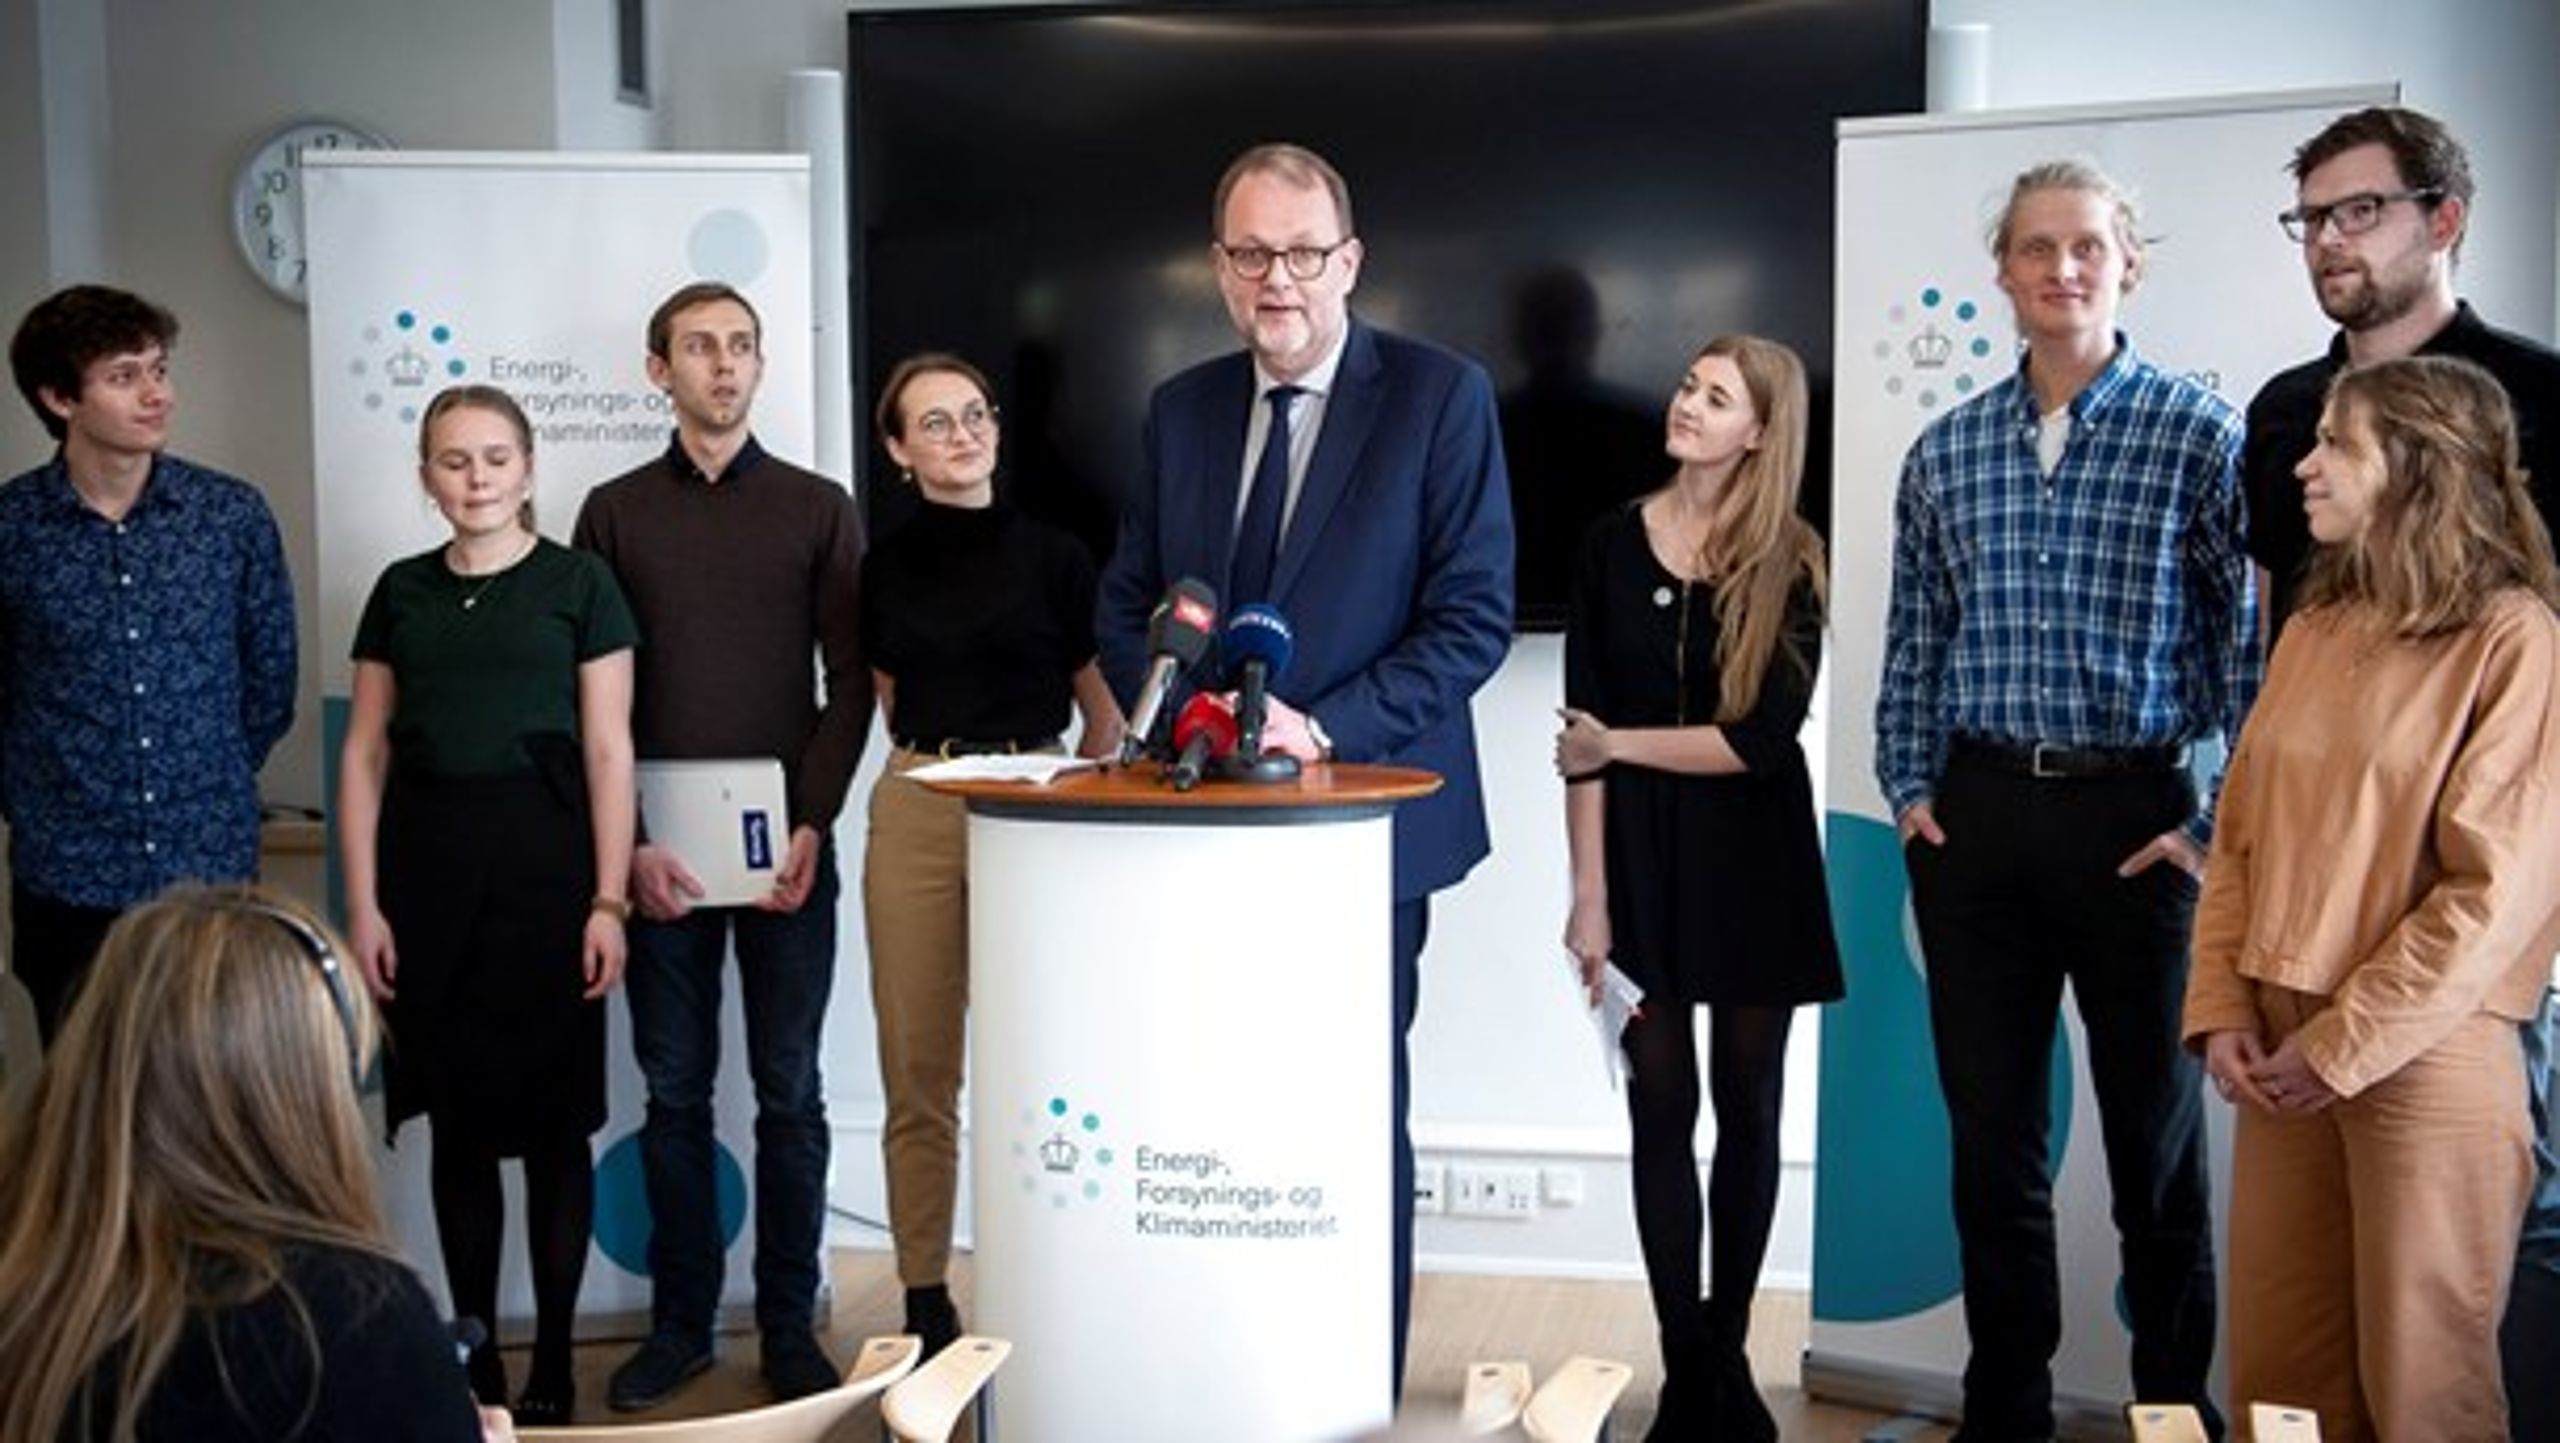 Klimaminister Lars Chr. Lilleholt (V) sammen med Ungeklimarådet, da rådet blev lanceret 6. marts 2019. (arkiv)